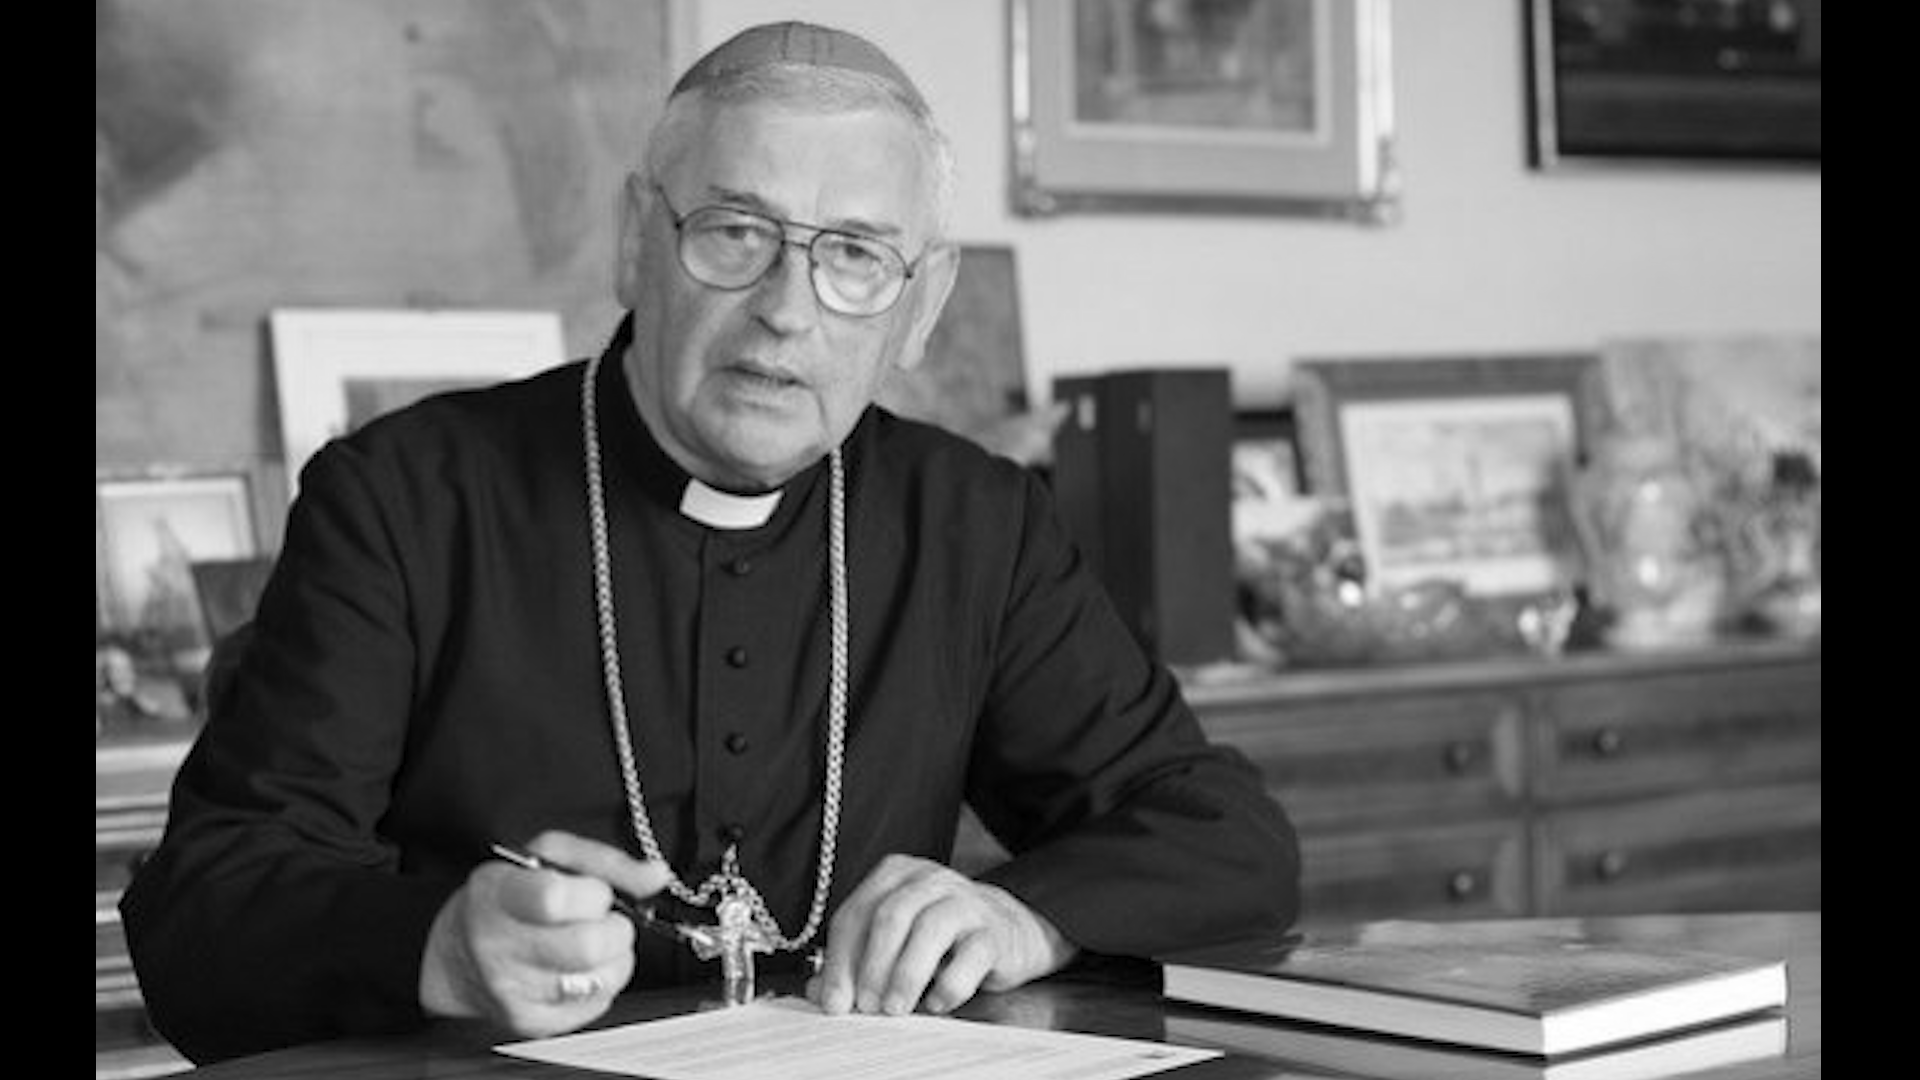 Zmarł biskup Tadeusz Pieronek. Były sekretarz generalny Konferencji Episkopatu Polski odszedł w wieku 84 lat (fot.KEP/twitter)